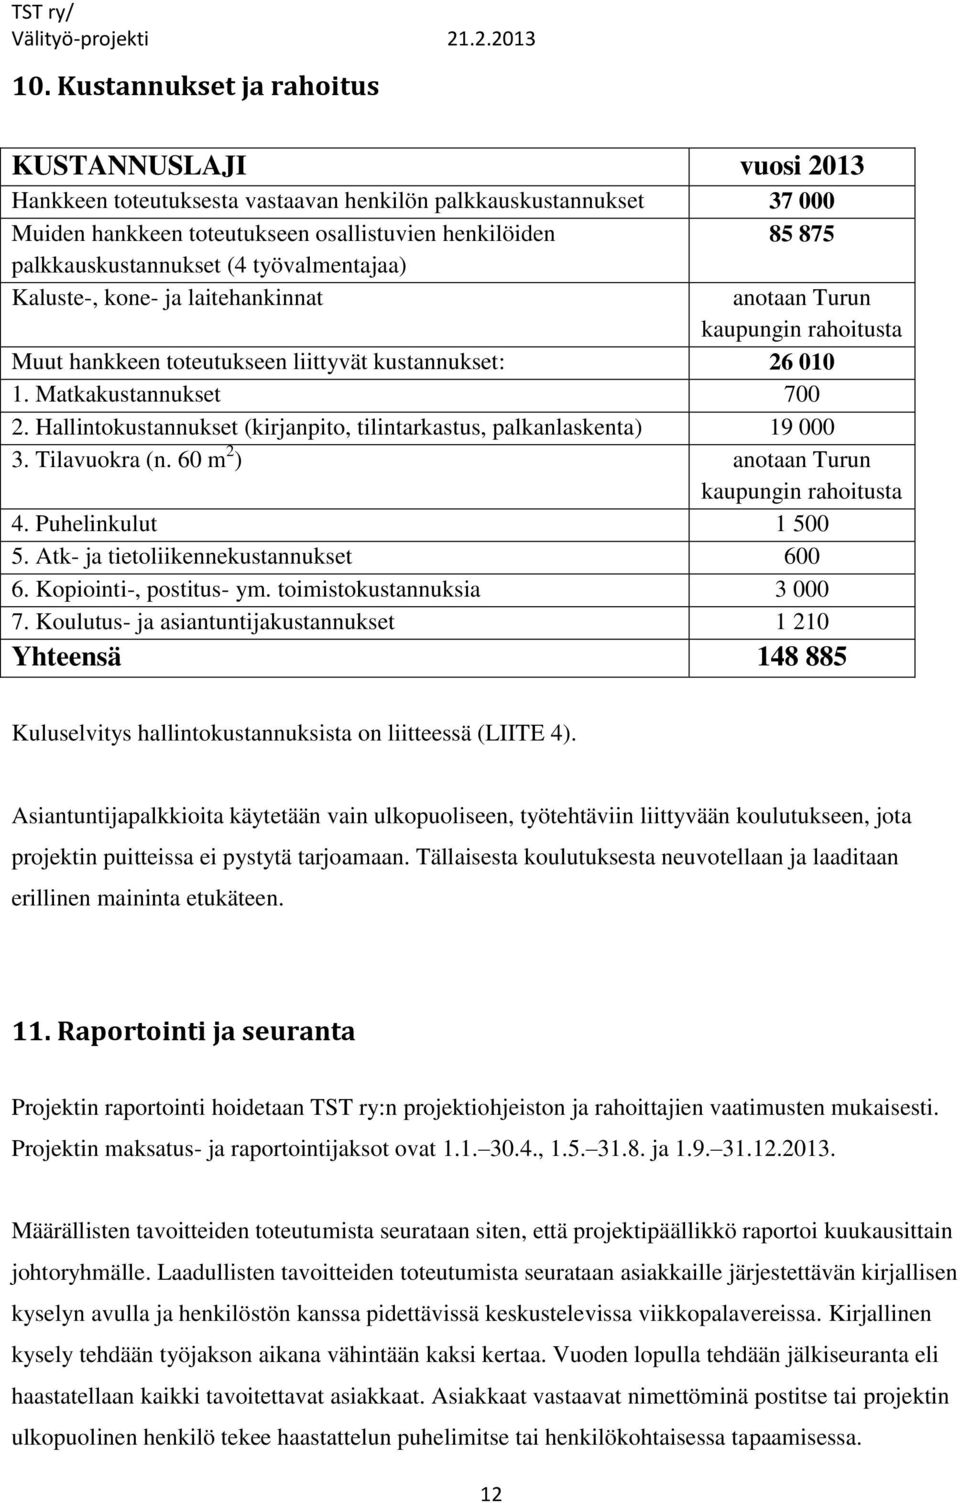 Hallintokustannukset (kirjanpito, tilintarkastus, palkanlaskenta) 19 000 3. Tilavuokra (n. 60 m 2 ) anotaan Turun kaupungin rahoitusta 4. Puhelinkulut 1 500 5. Atk- ja tietoliikennekustannukset 600 6.